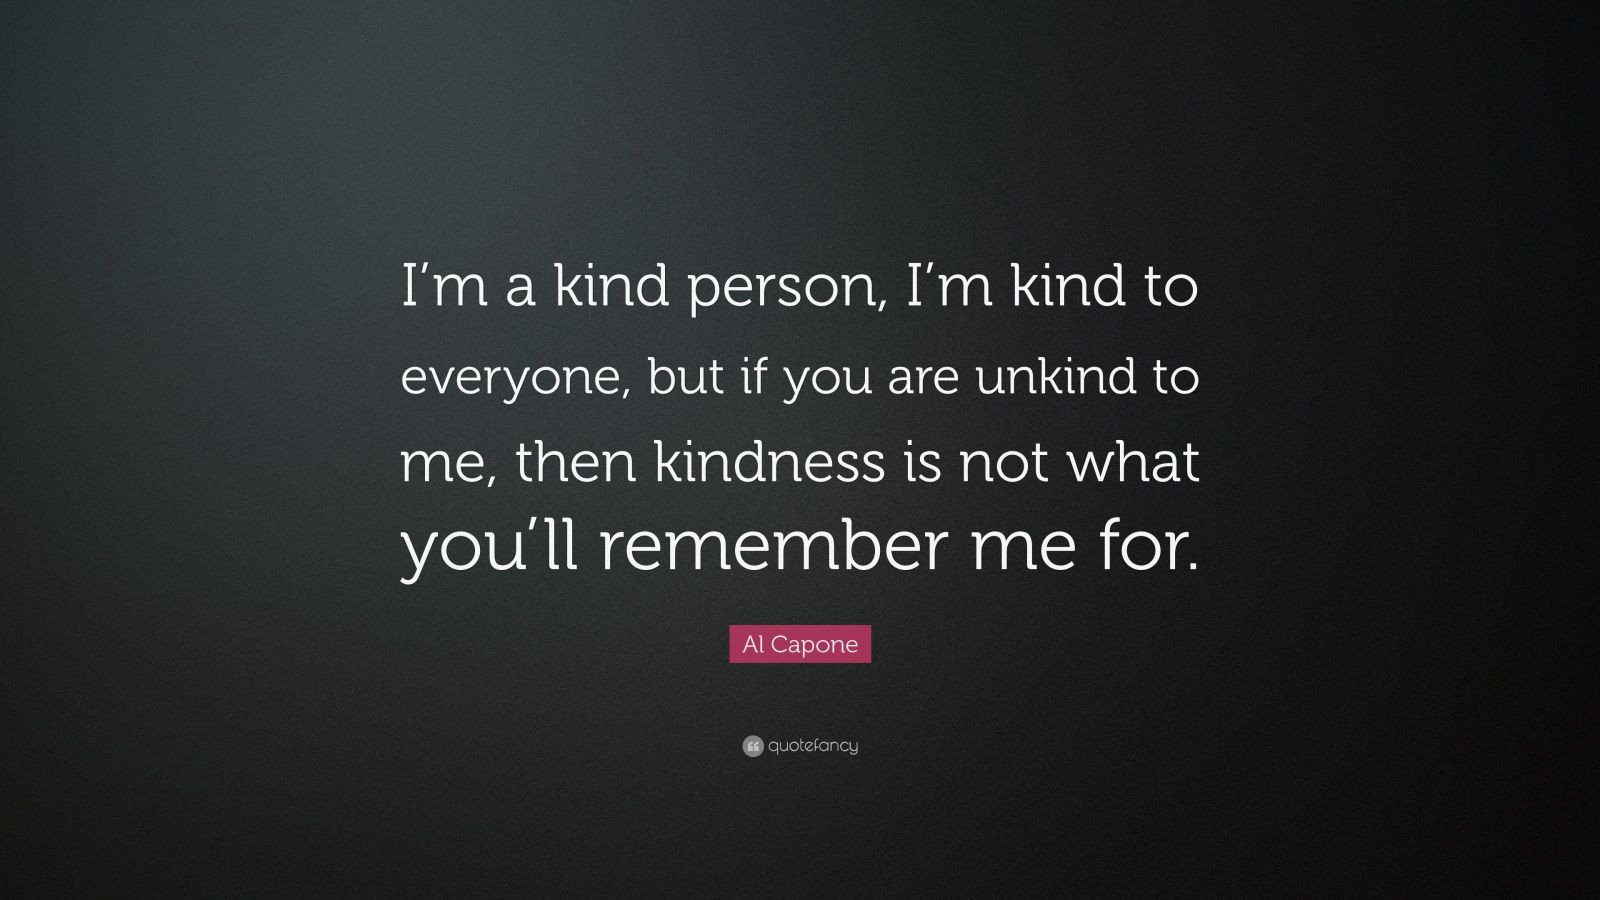 Al Capone Quote Kindness
 Al Capone Quote “I’m a kind person I’m kind to everyone